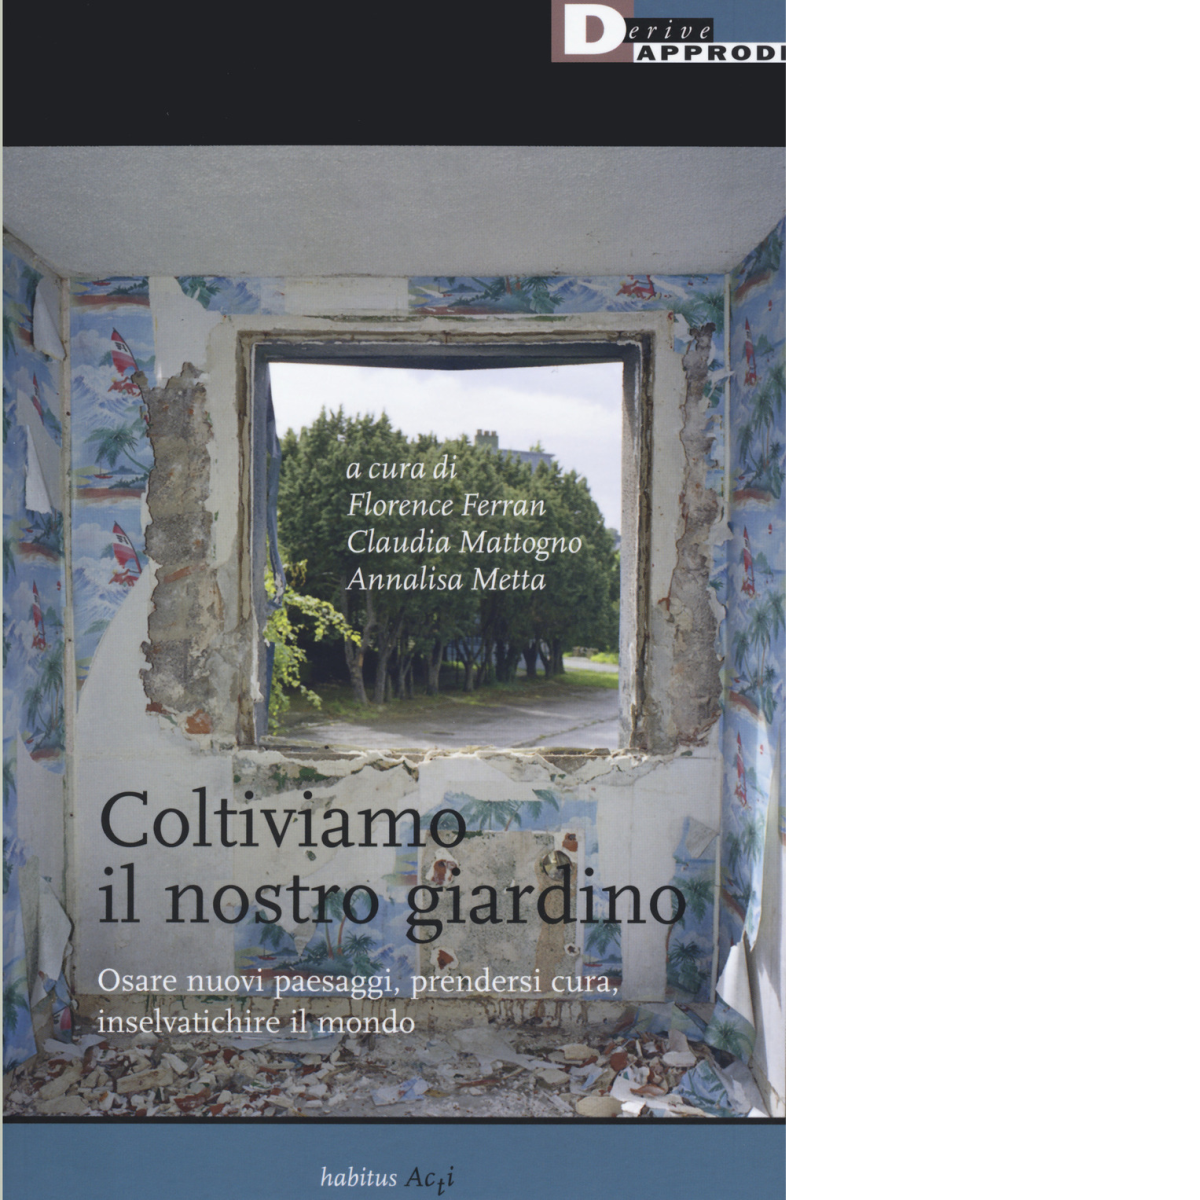 Coltiviamo il nostro giardino - F. Ferran, C. Mattogno, A. Metta - 2019